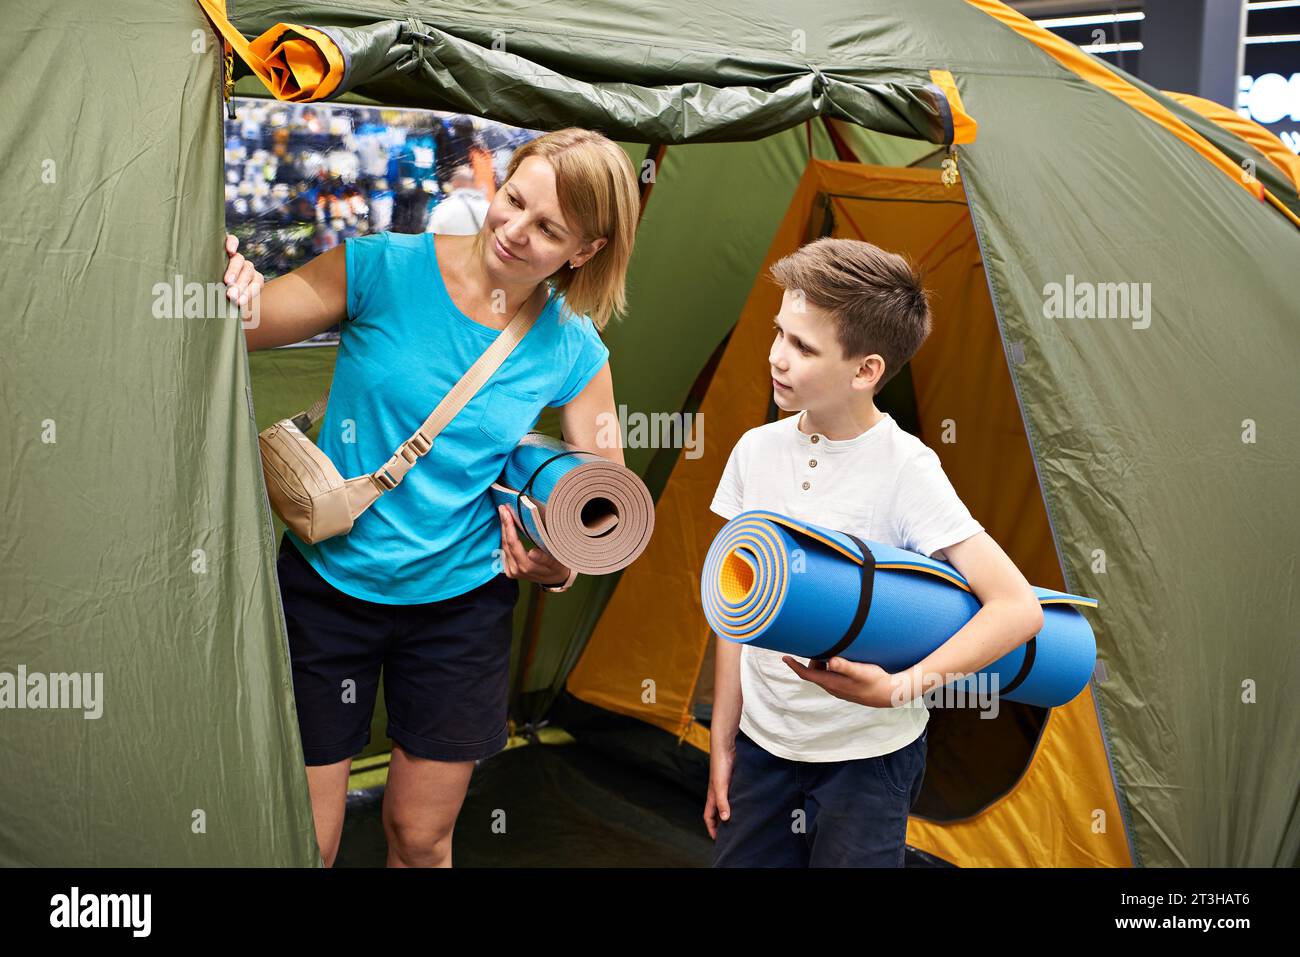 Mamma e figlio scelgono una tenda da campeggio in negozio Foto Stock